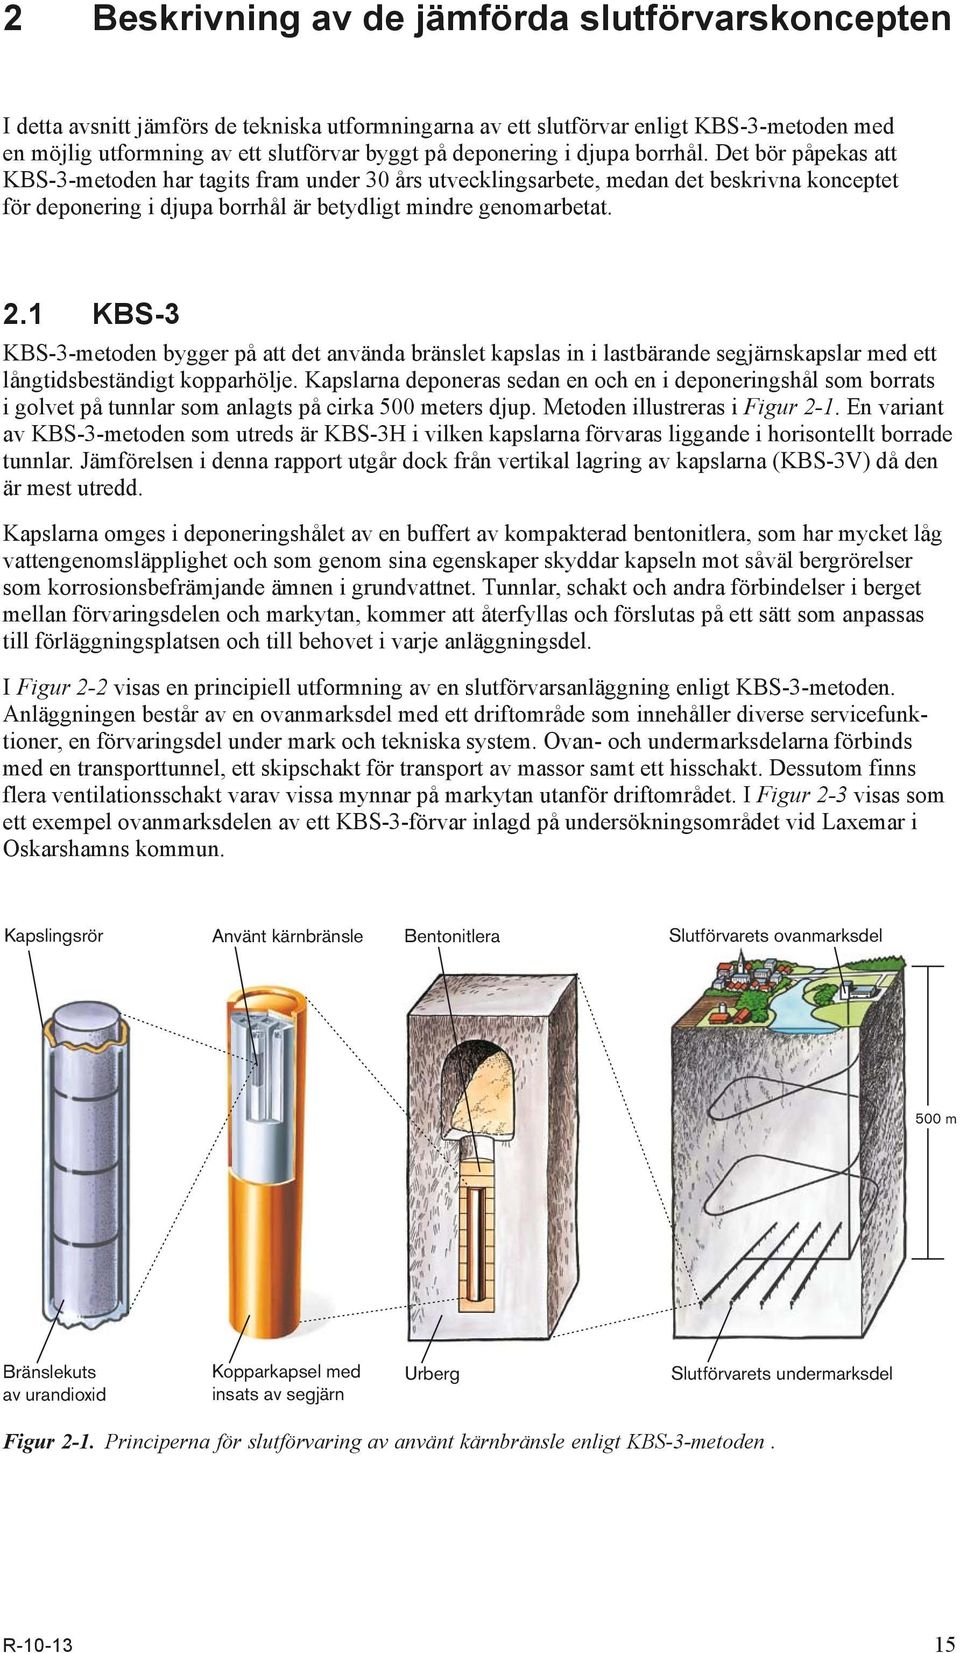 Det bör påpekas att KBS-3-metoden har tagits fram under 30 års utvecklingsarbete, medan det beskrivna konceptet för deponering i djupa borrhål är betydligt mindre genomarbetat. 2.